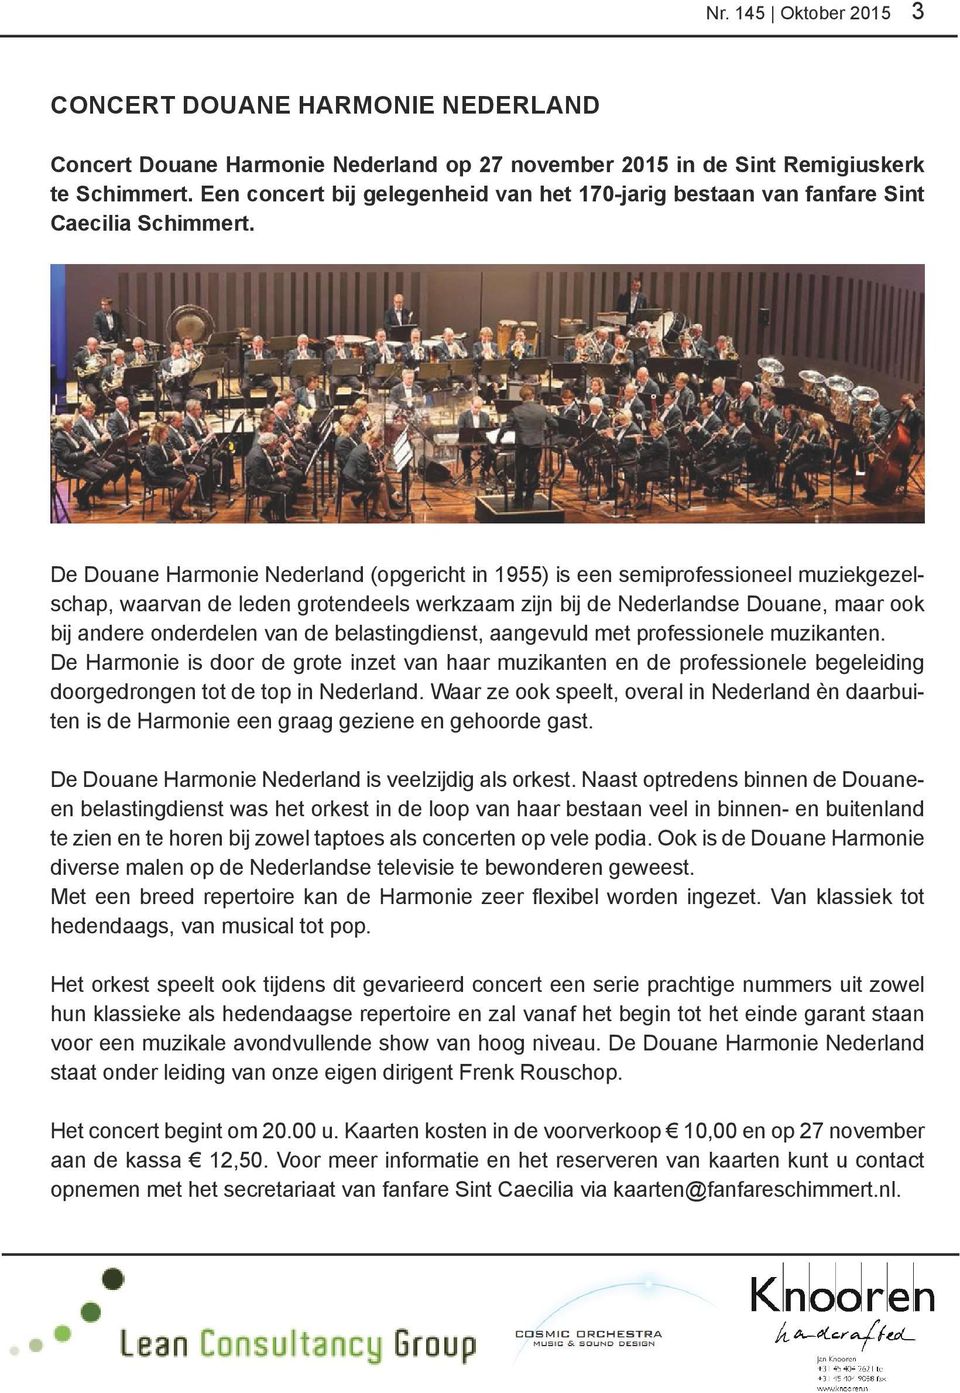 De Douane Harmonie Nederland (opgericht in 1955) is een semiprofessioneel muziekgezelschap, waarvan de leden grotendeels werkzaam zijn bij de Nederlandse Douane, maar ook bij andere onderdelen van de